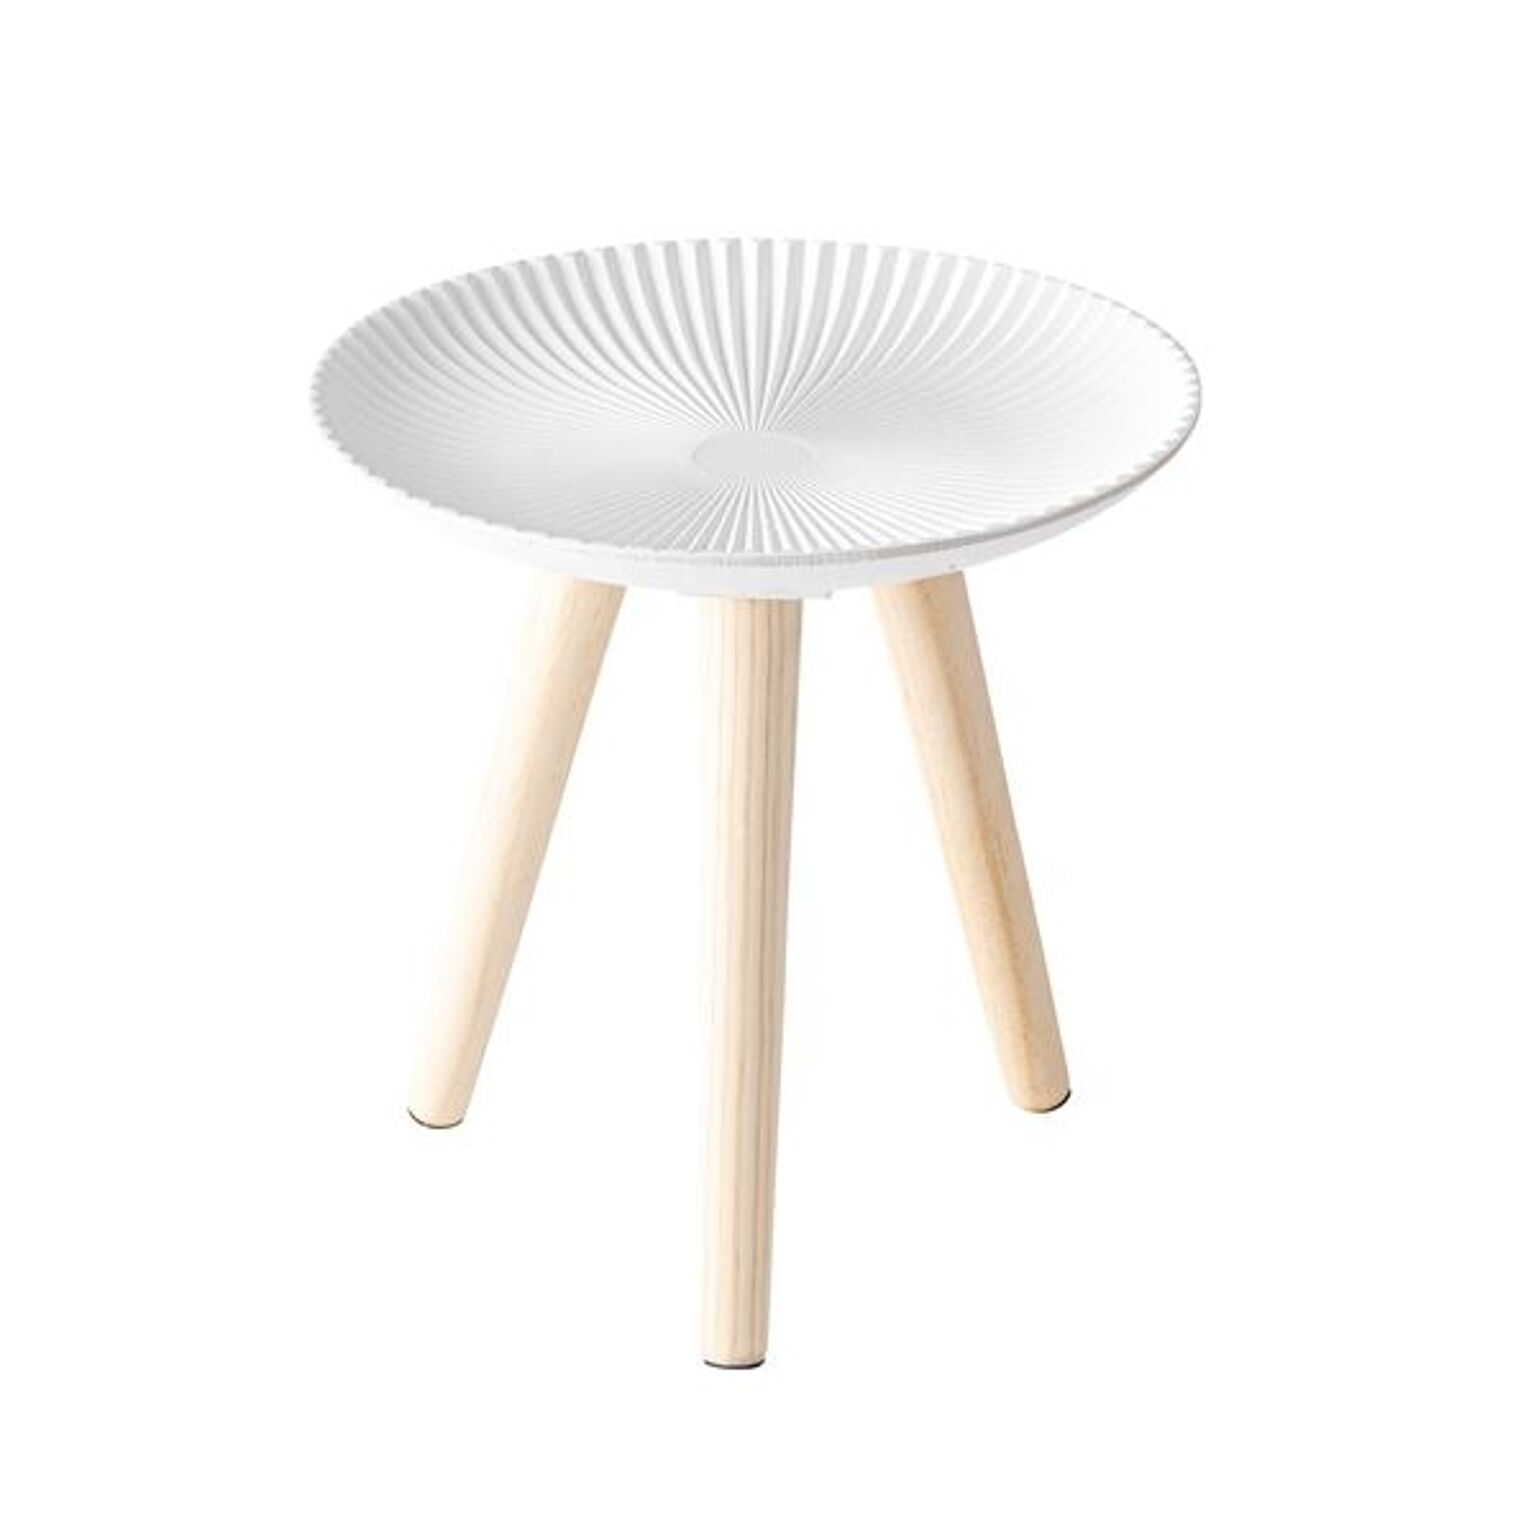 サイドテーブル ミニテーブル 約幅29.5cm Sサイズ 円形 ホワイト トレーテーブル 組立品 リビング ダイニング インテリア家具